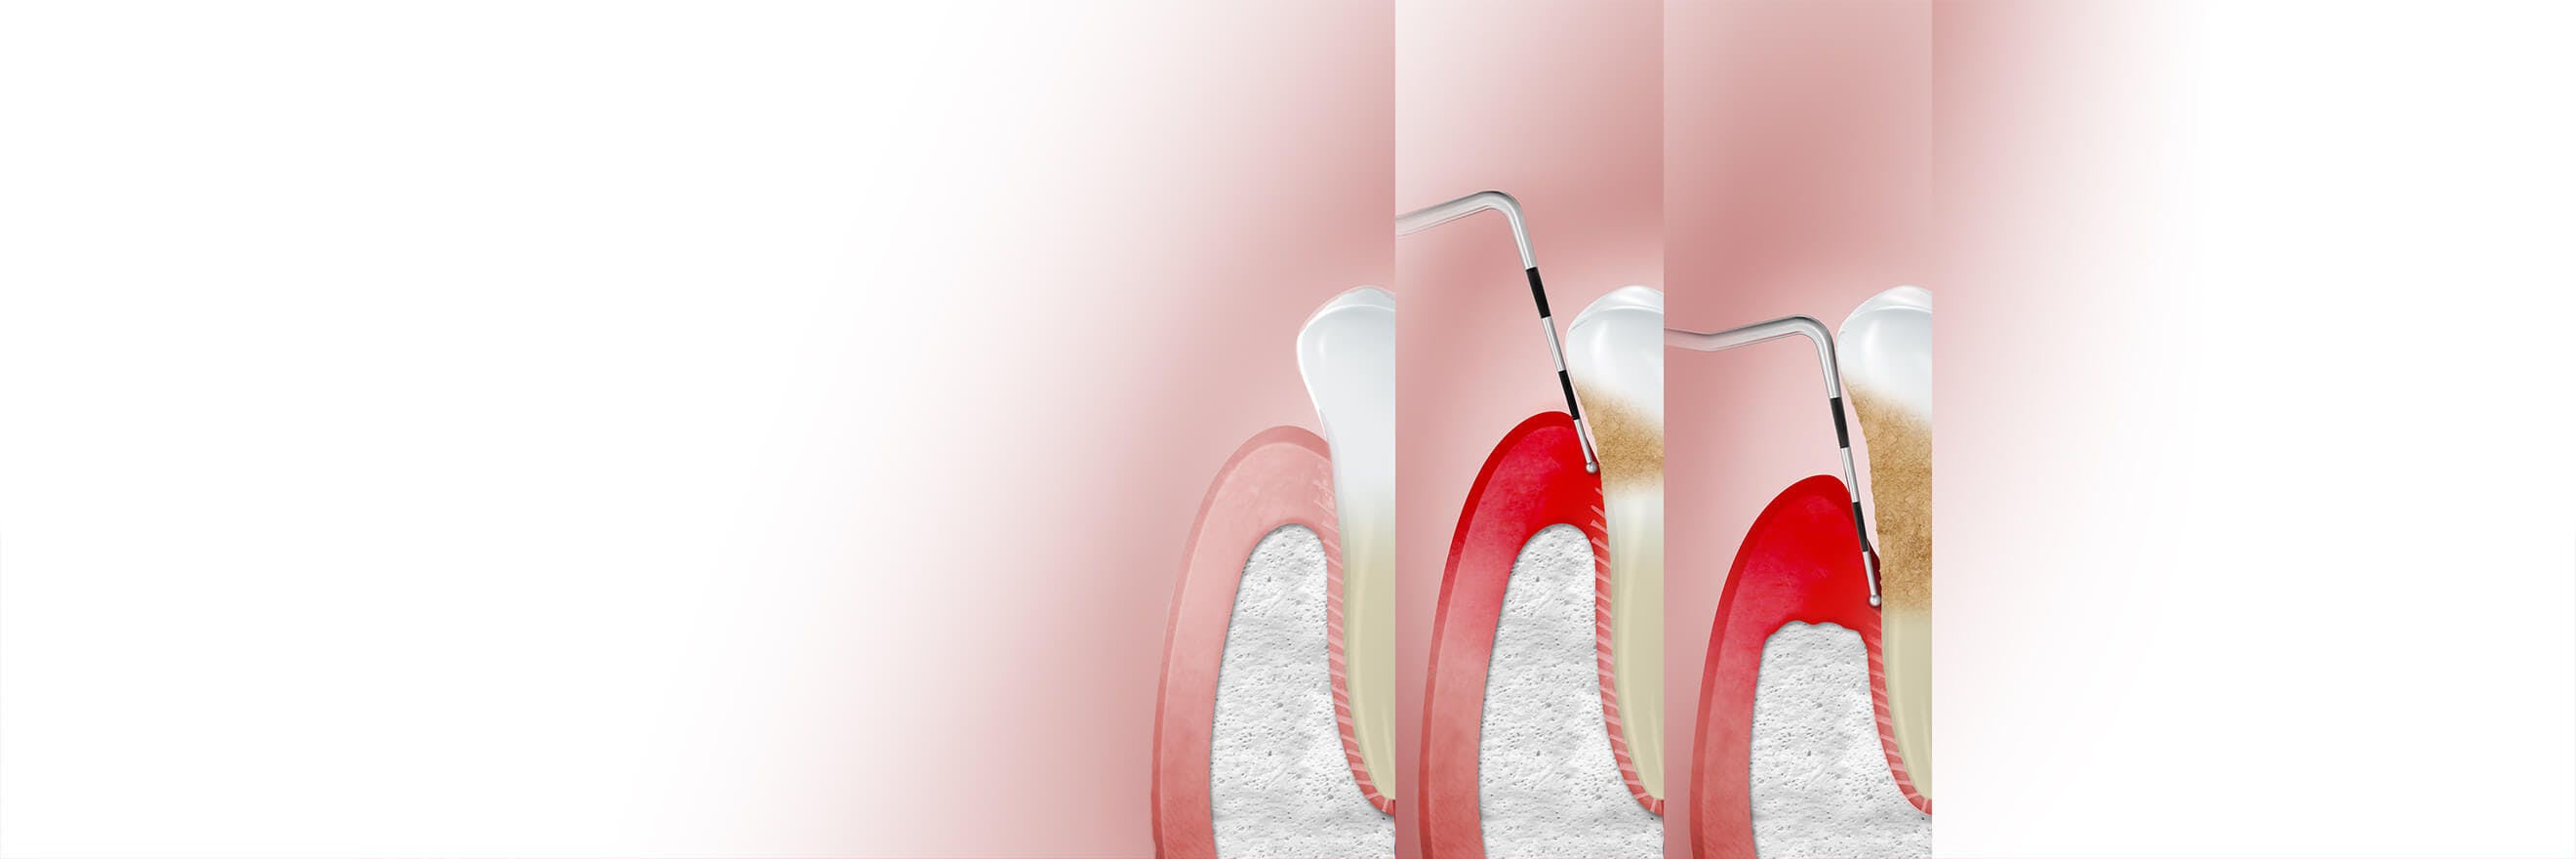 Illustration av tandkött påverkat av gingivit (tandköttsinflammation) med texten "Stadier"